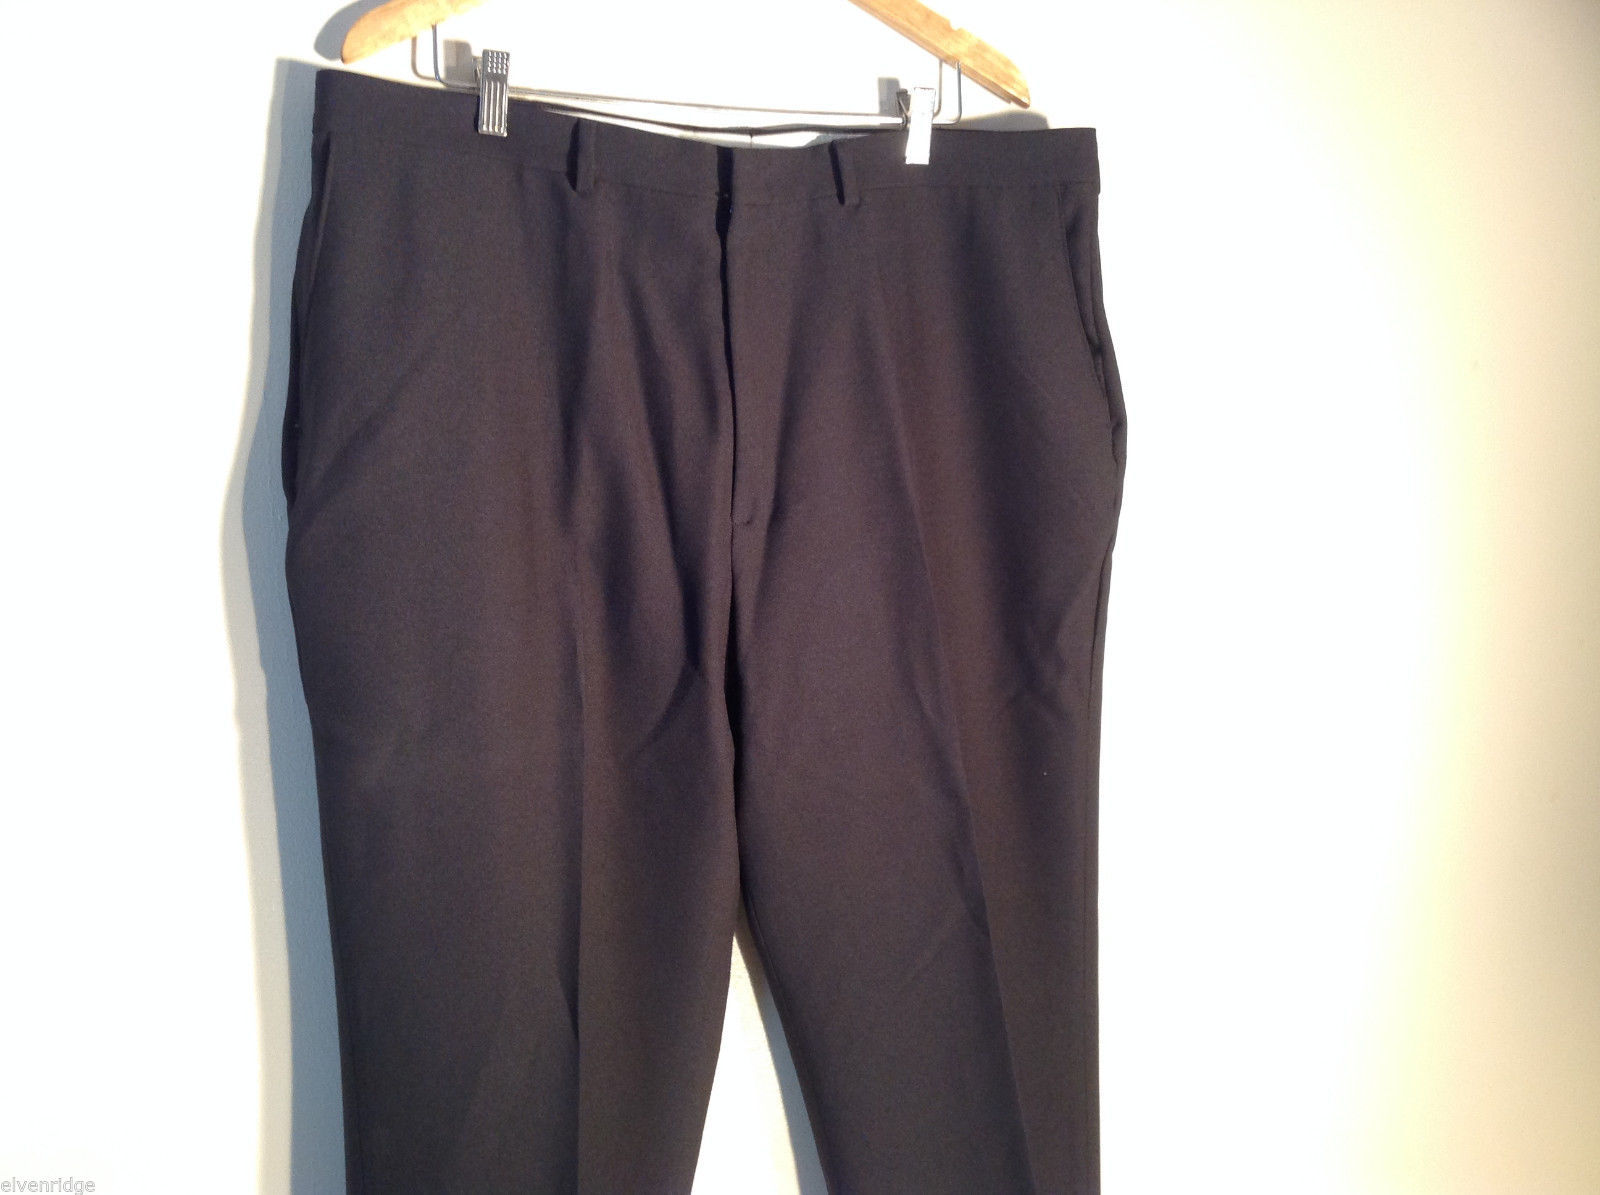 Mens Puritan Black Casual/Dress Pants Size 42x30 Excellent - Pants